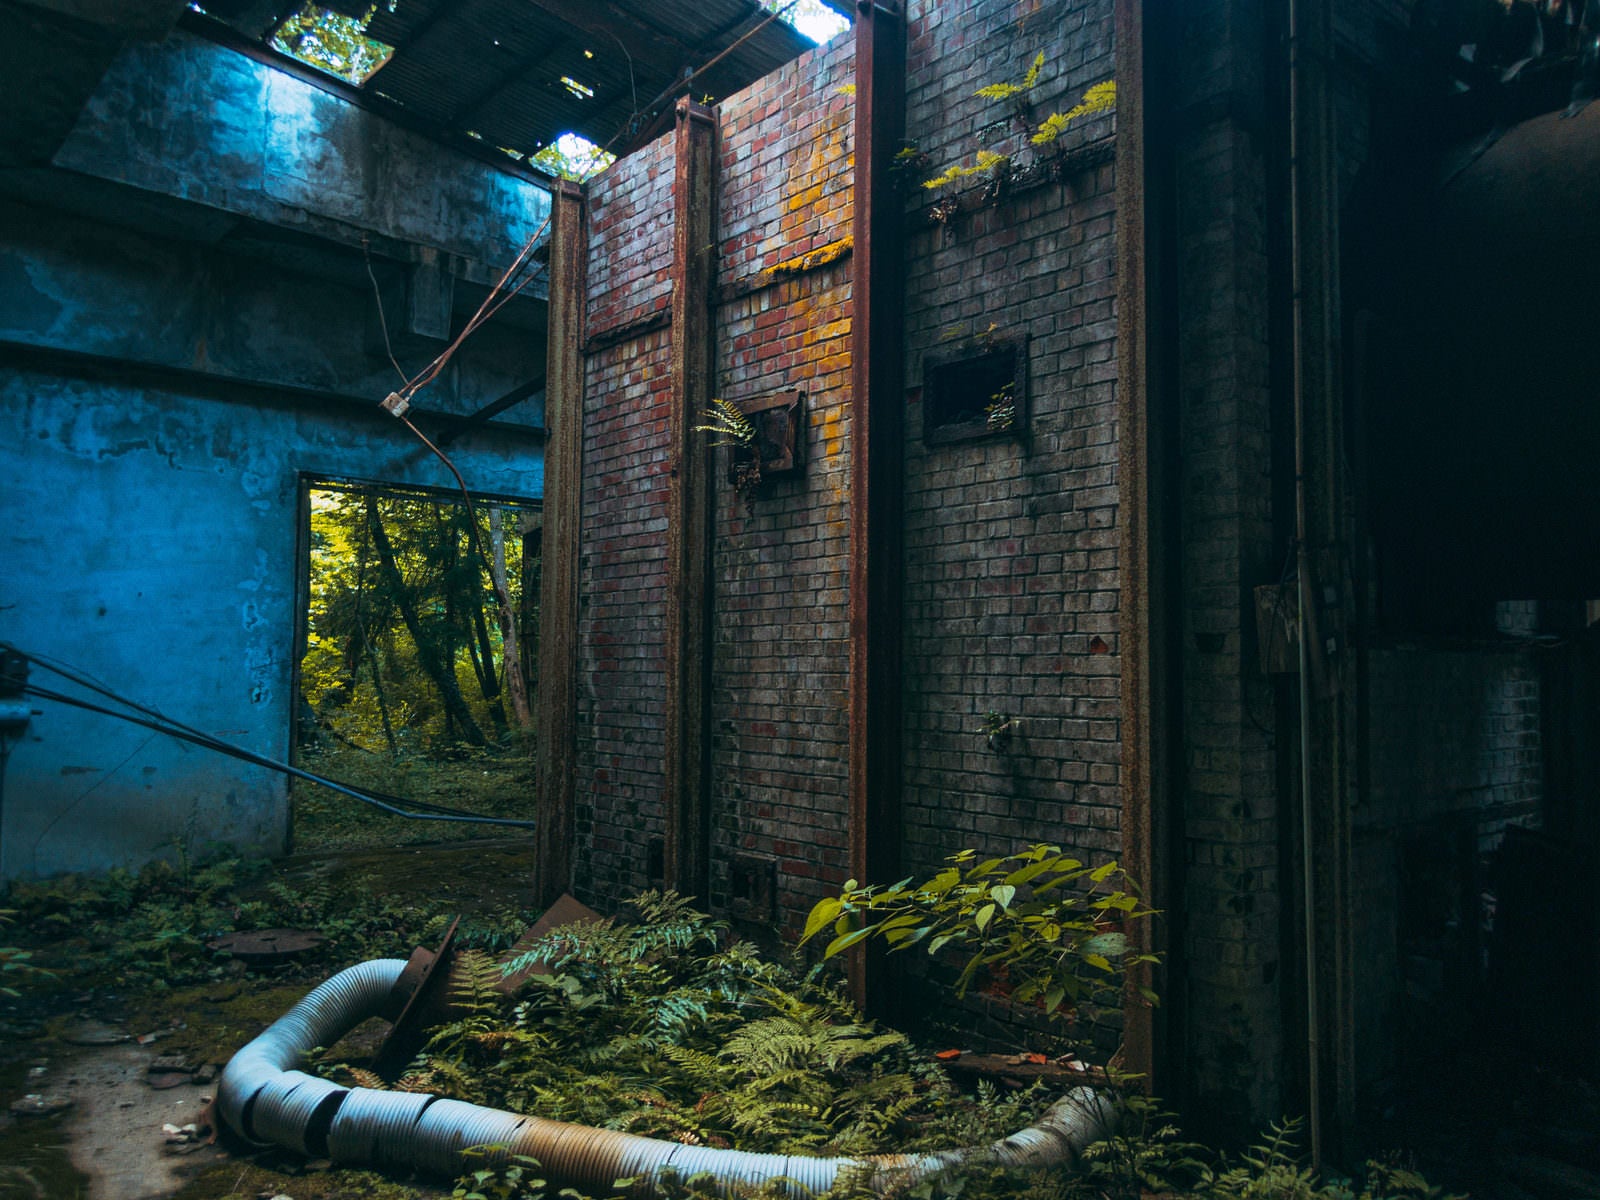 「廃工場内部のレンガの壁」の写真